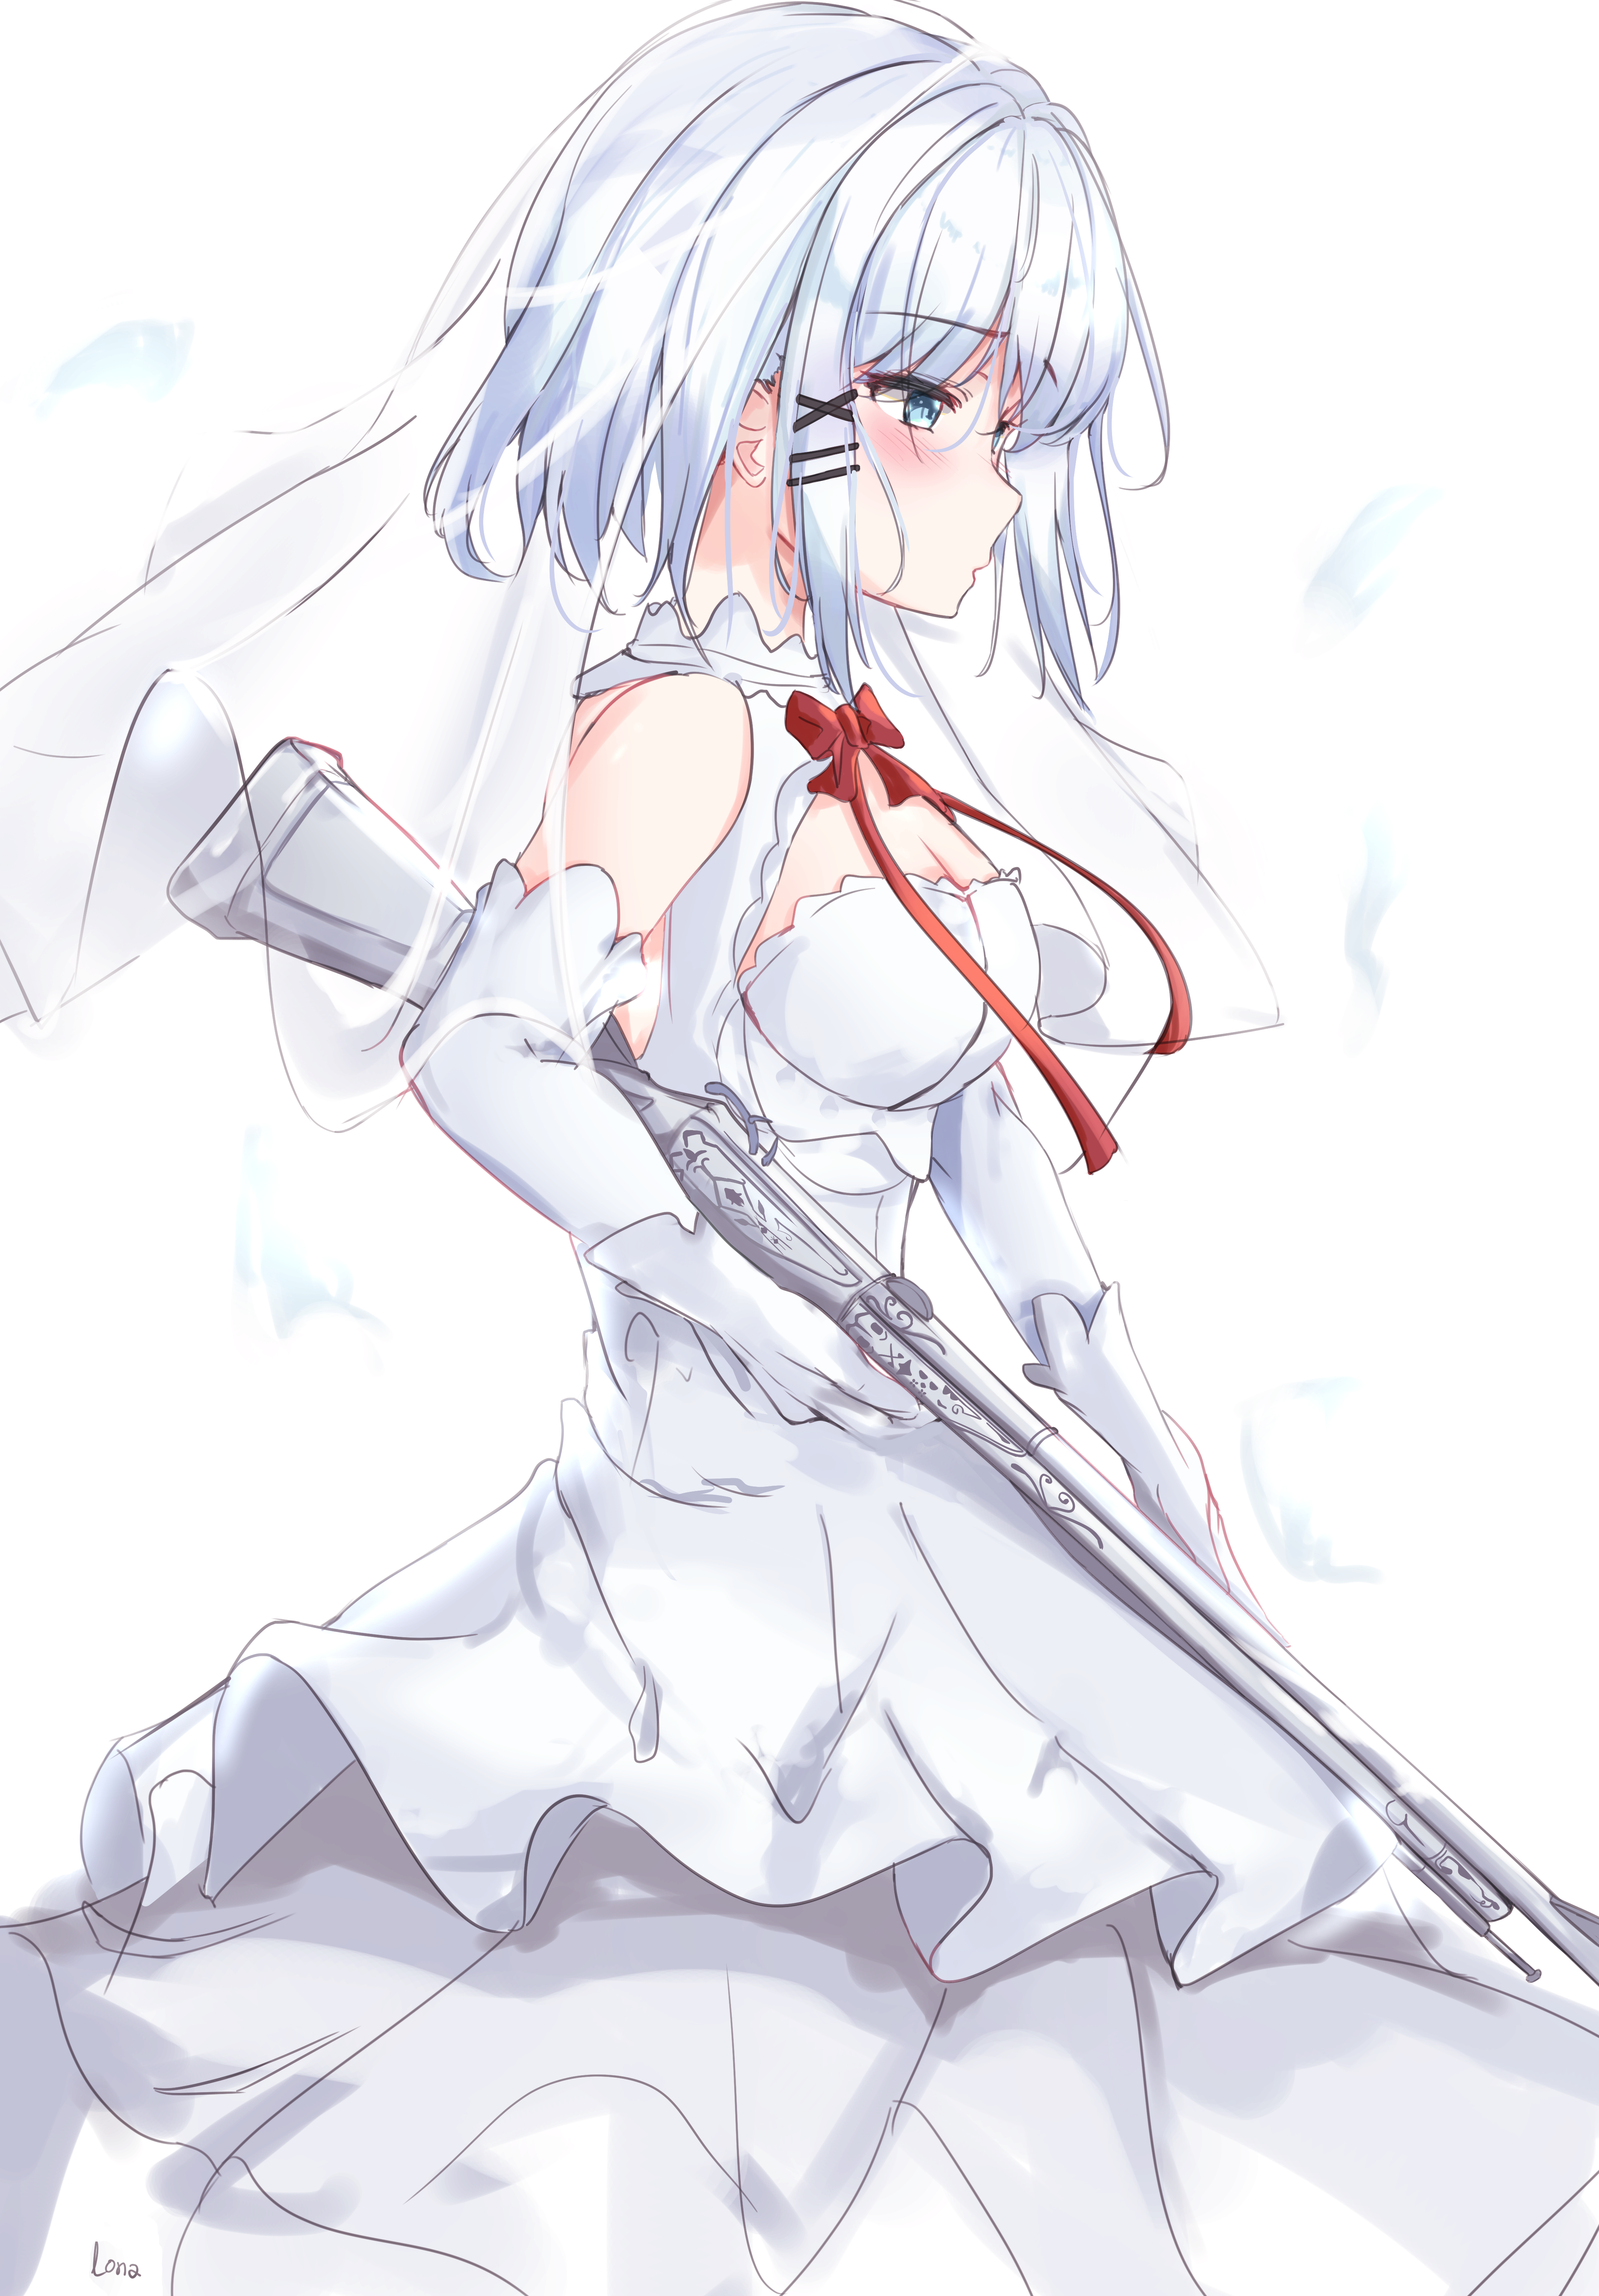 White Hair Siesta Short Hair Blue Eyes Tantei Wa Mou Shindeiru Wedding Dress Gun Looking Away Anime  4256x6112